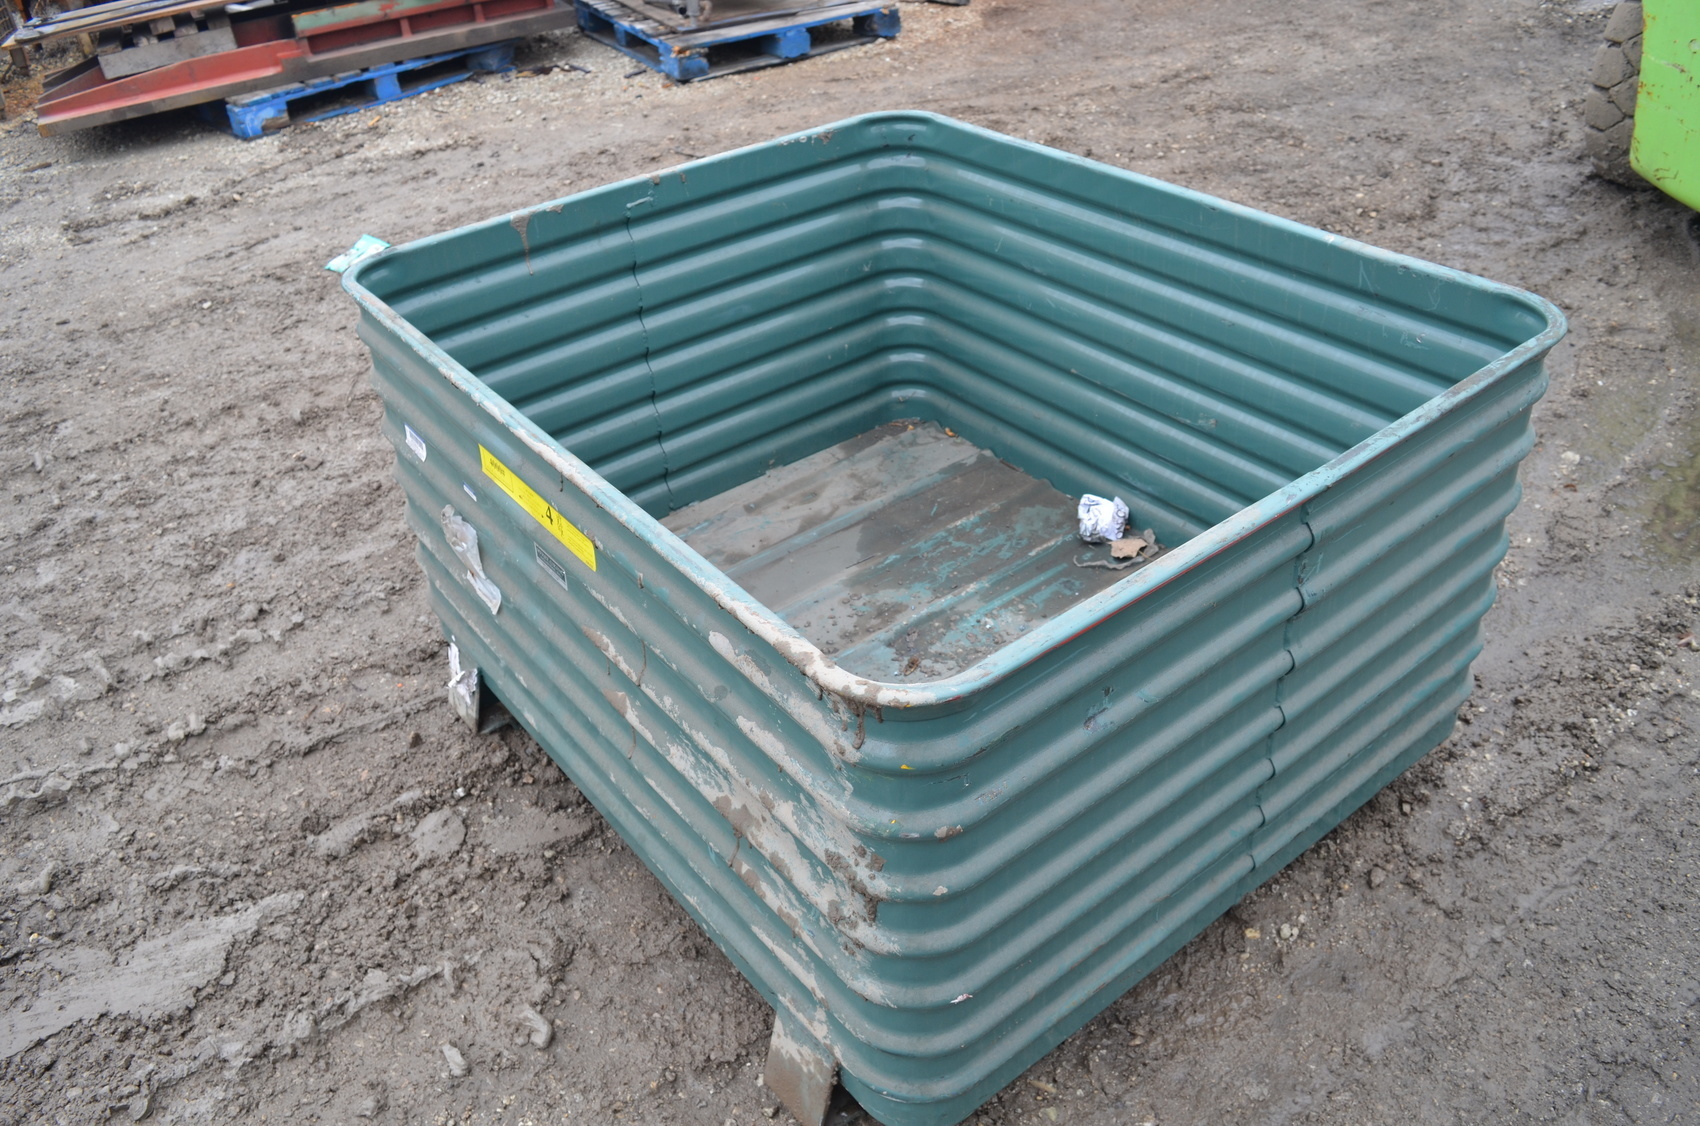 Steel king stackable steel bin crate;4000lbs,50x42x28"overal;depth-24"